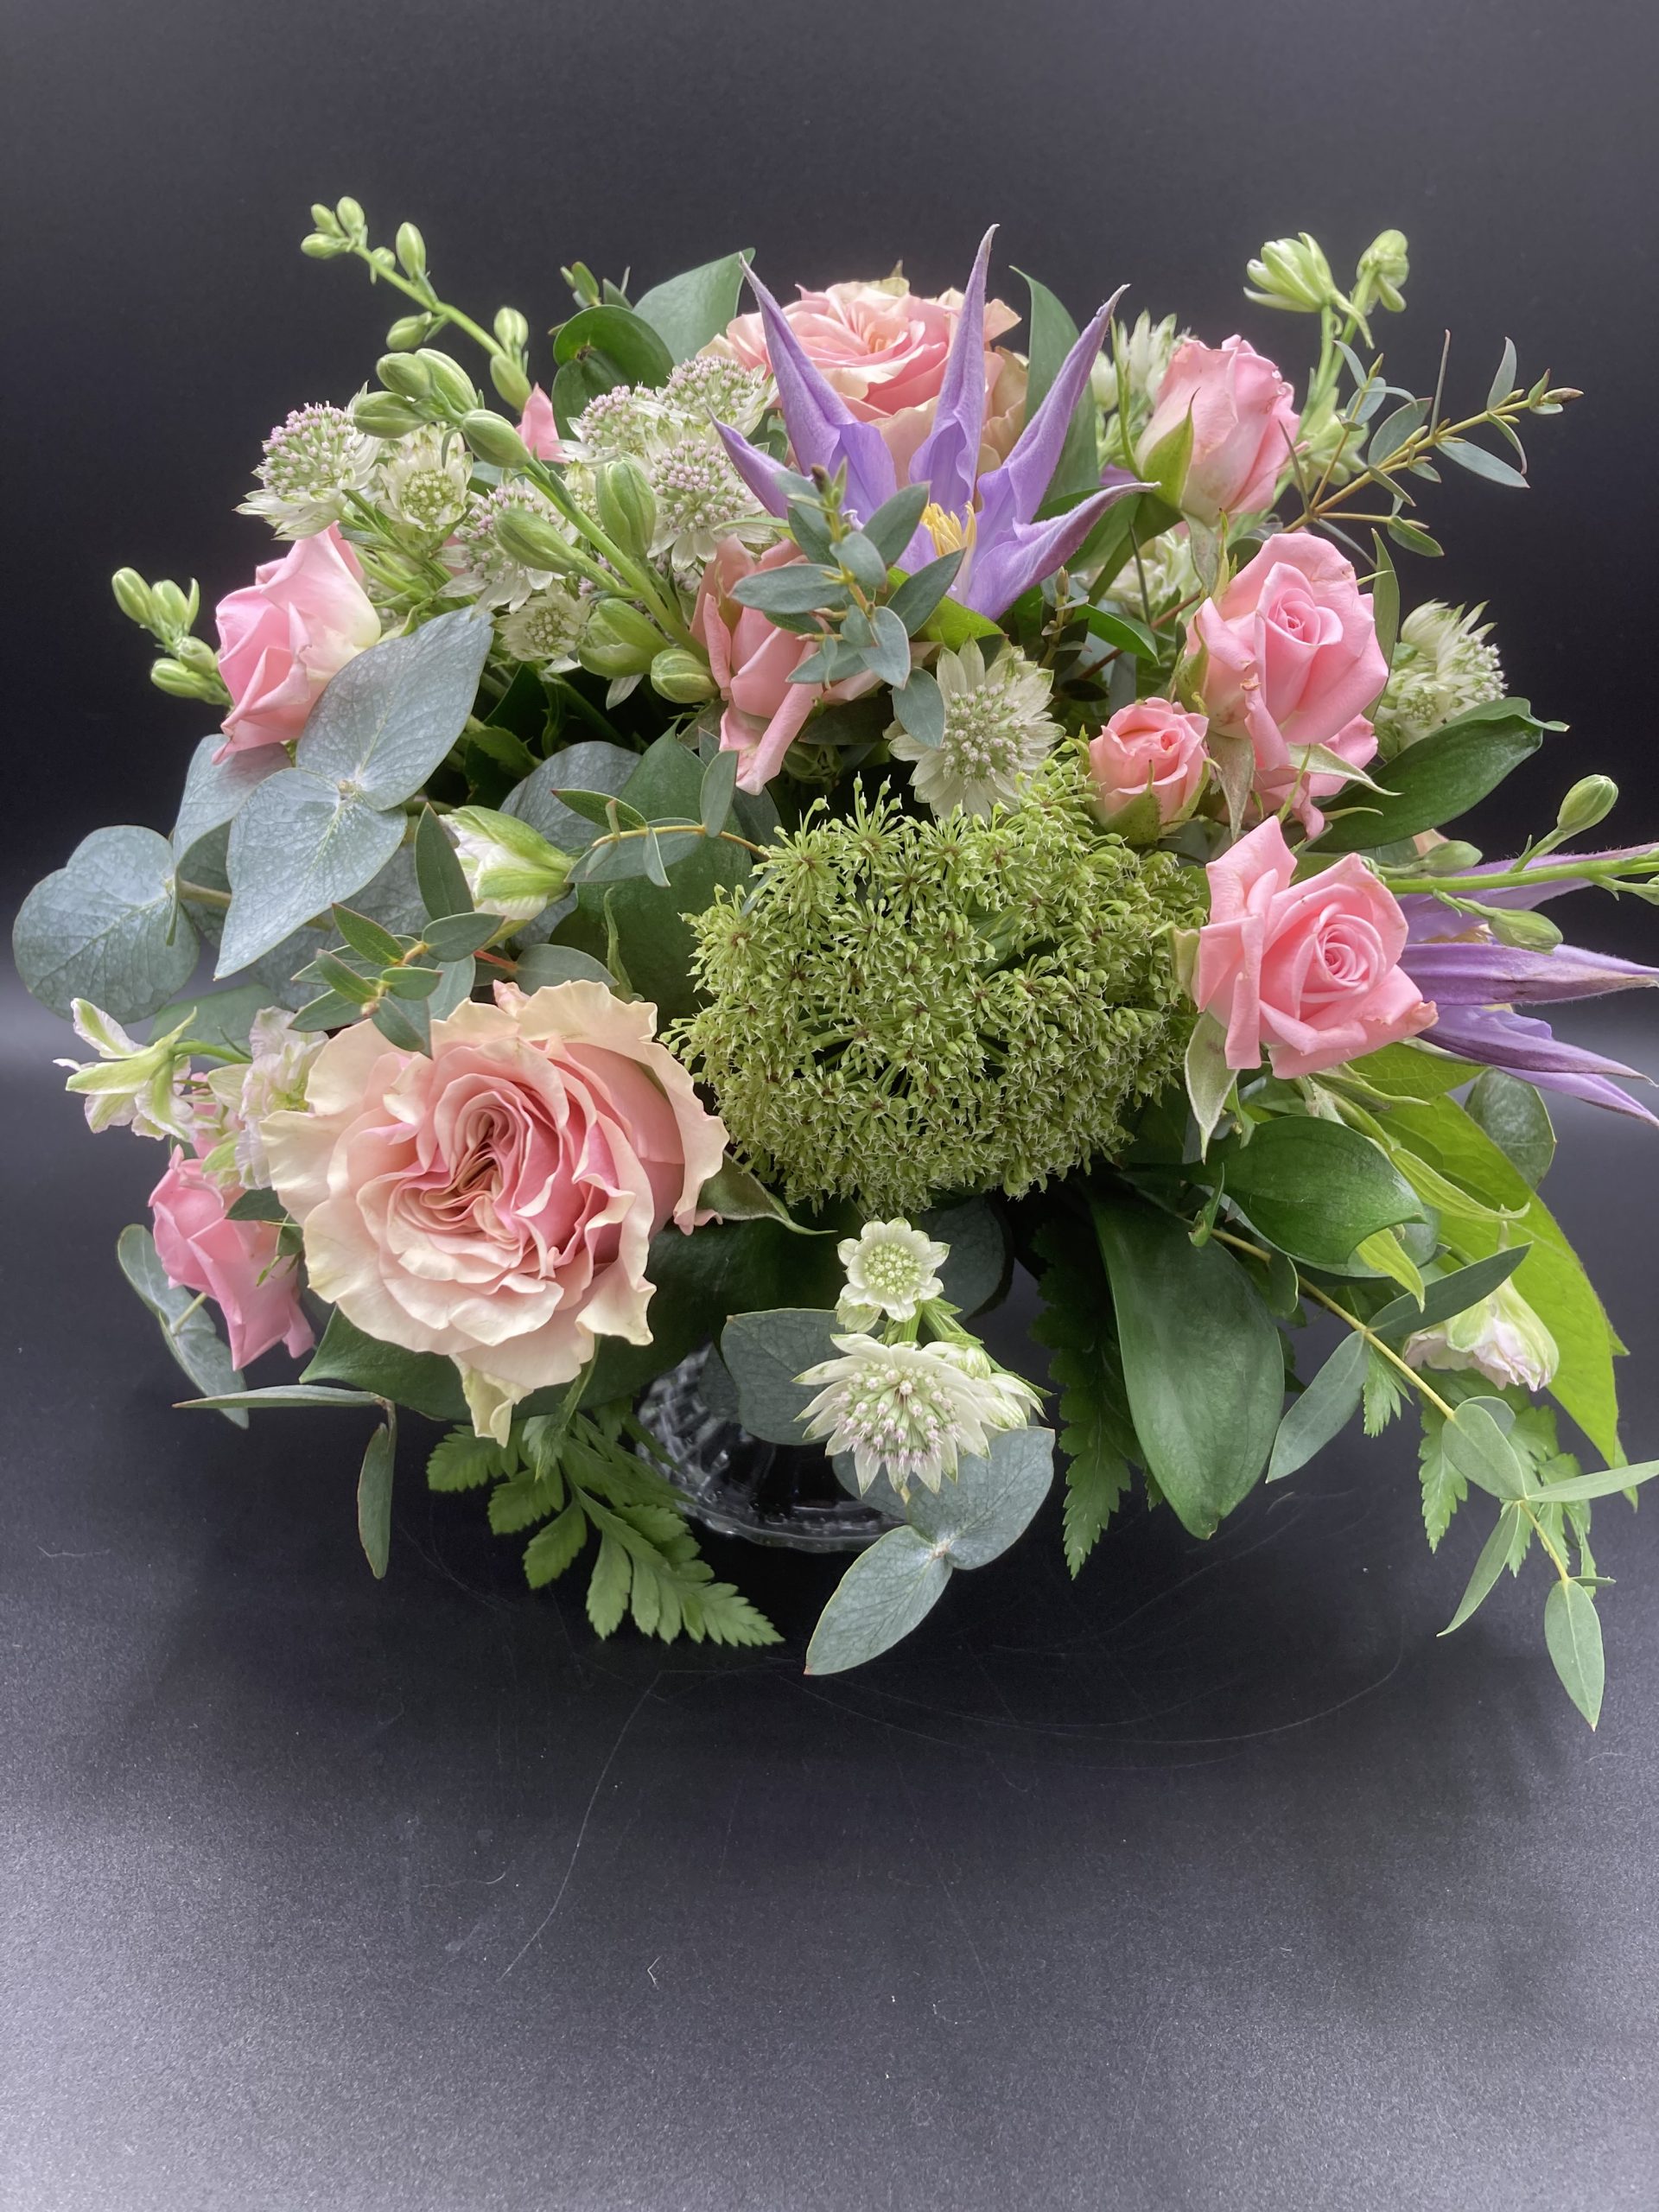 Totem pole cake stand flower arrangement design seoul florist | Petal  Palette - Victoria BC Florist